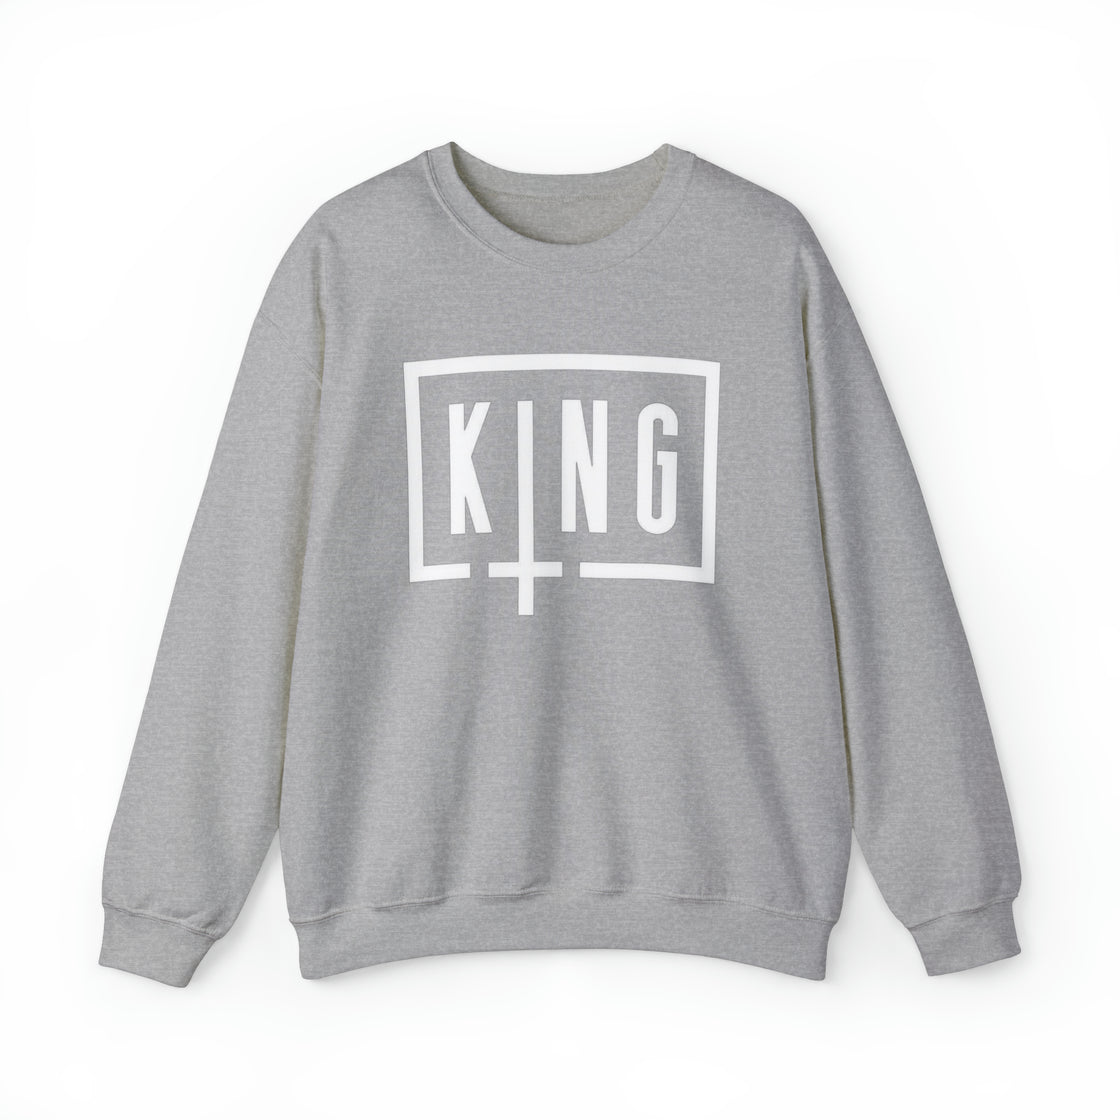 Sullivan King Sweatshirt